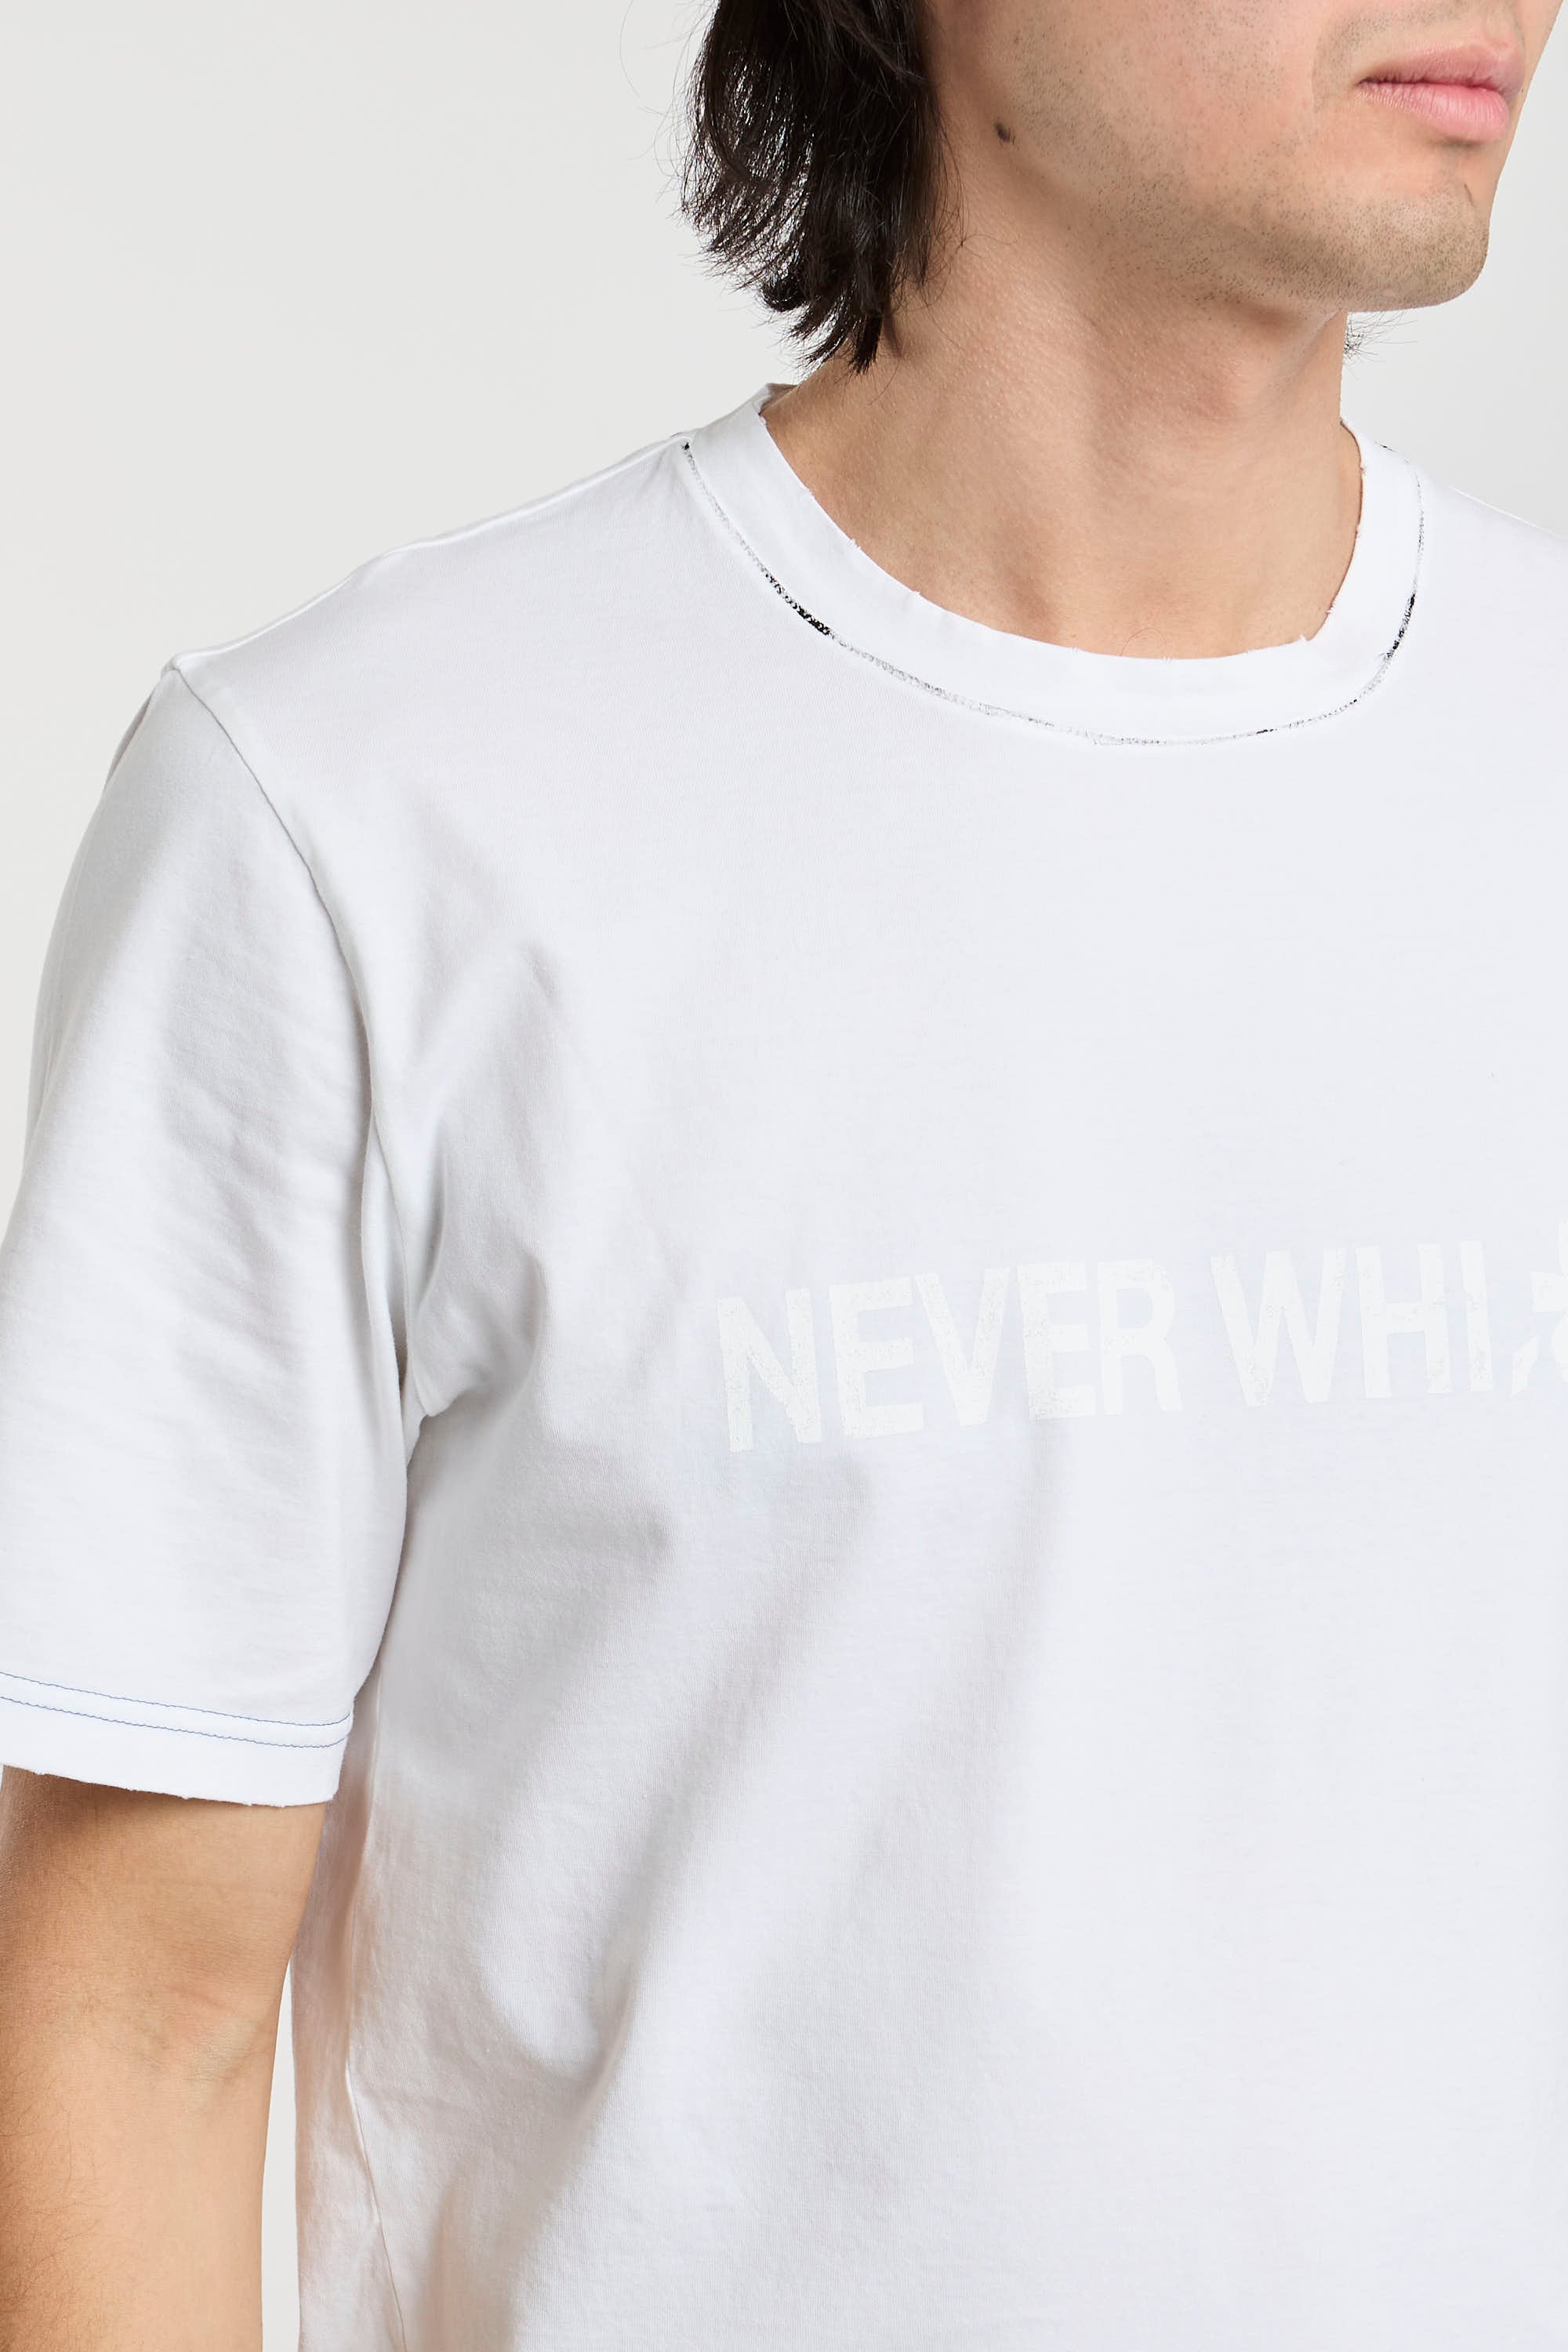 Premiata T-Shirt 'Never White' aus weißer Baumwolle-1